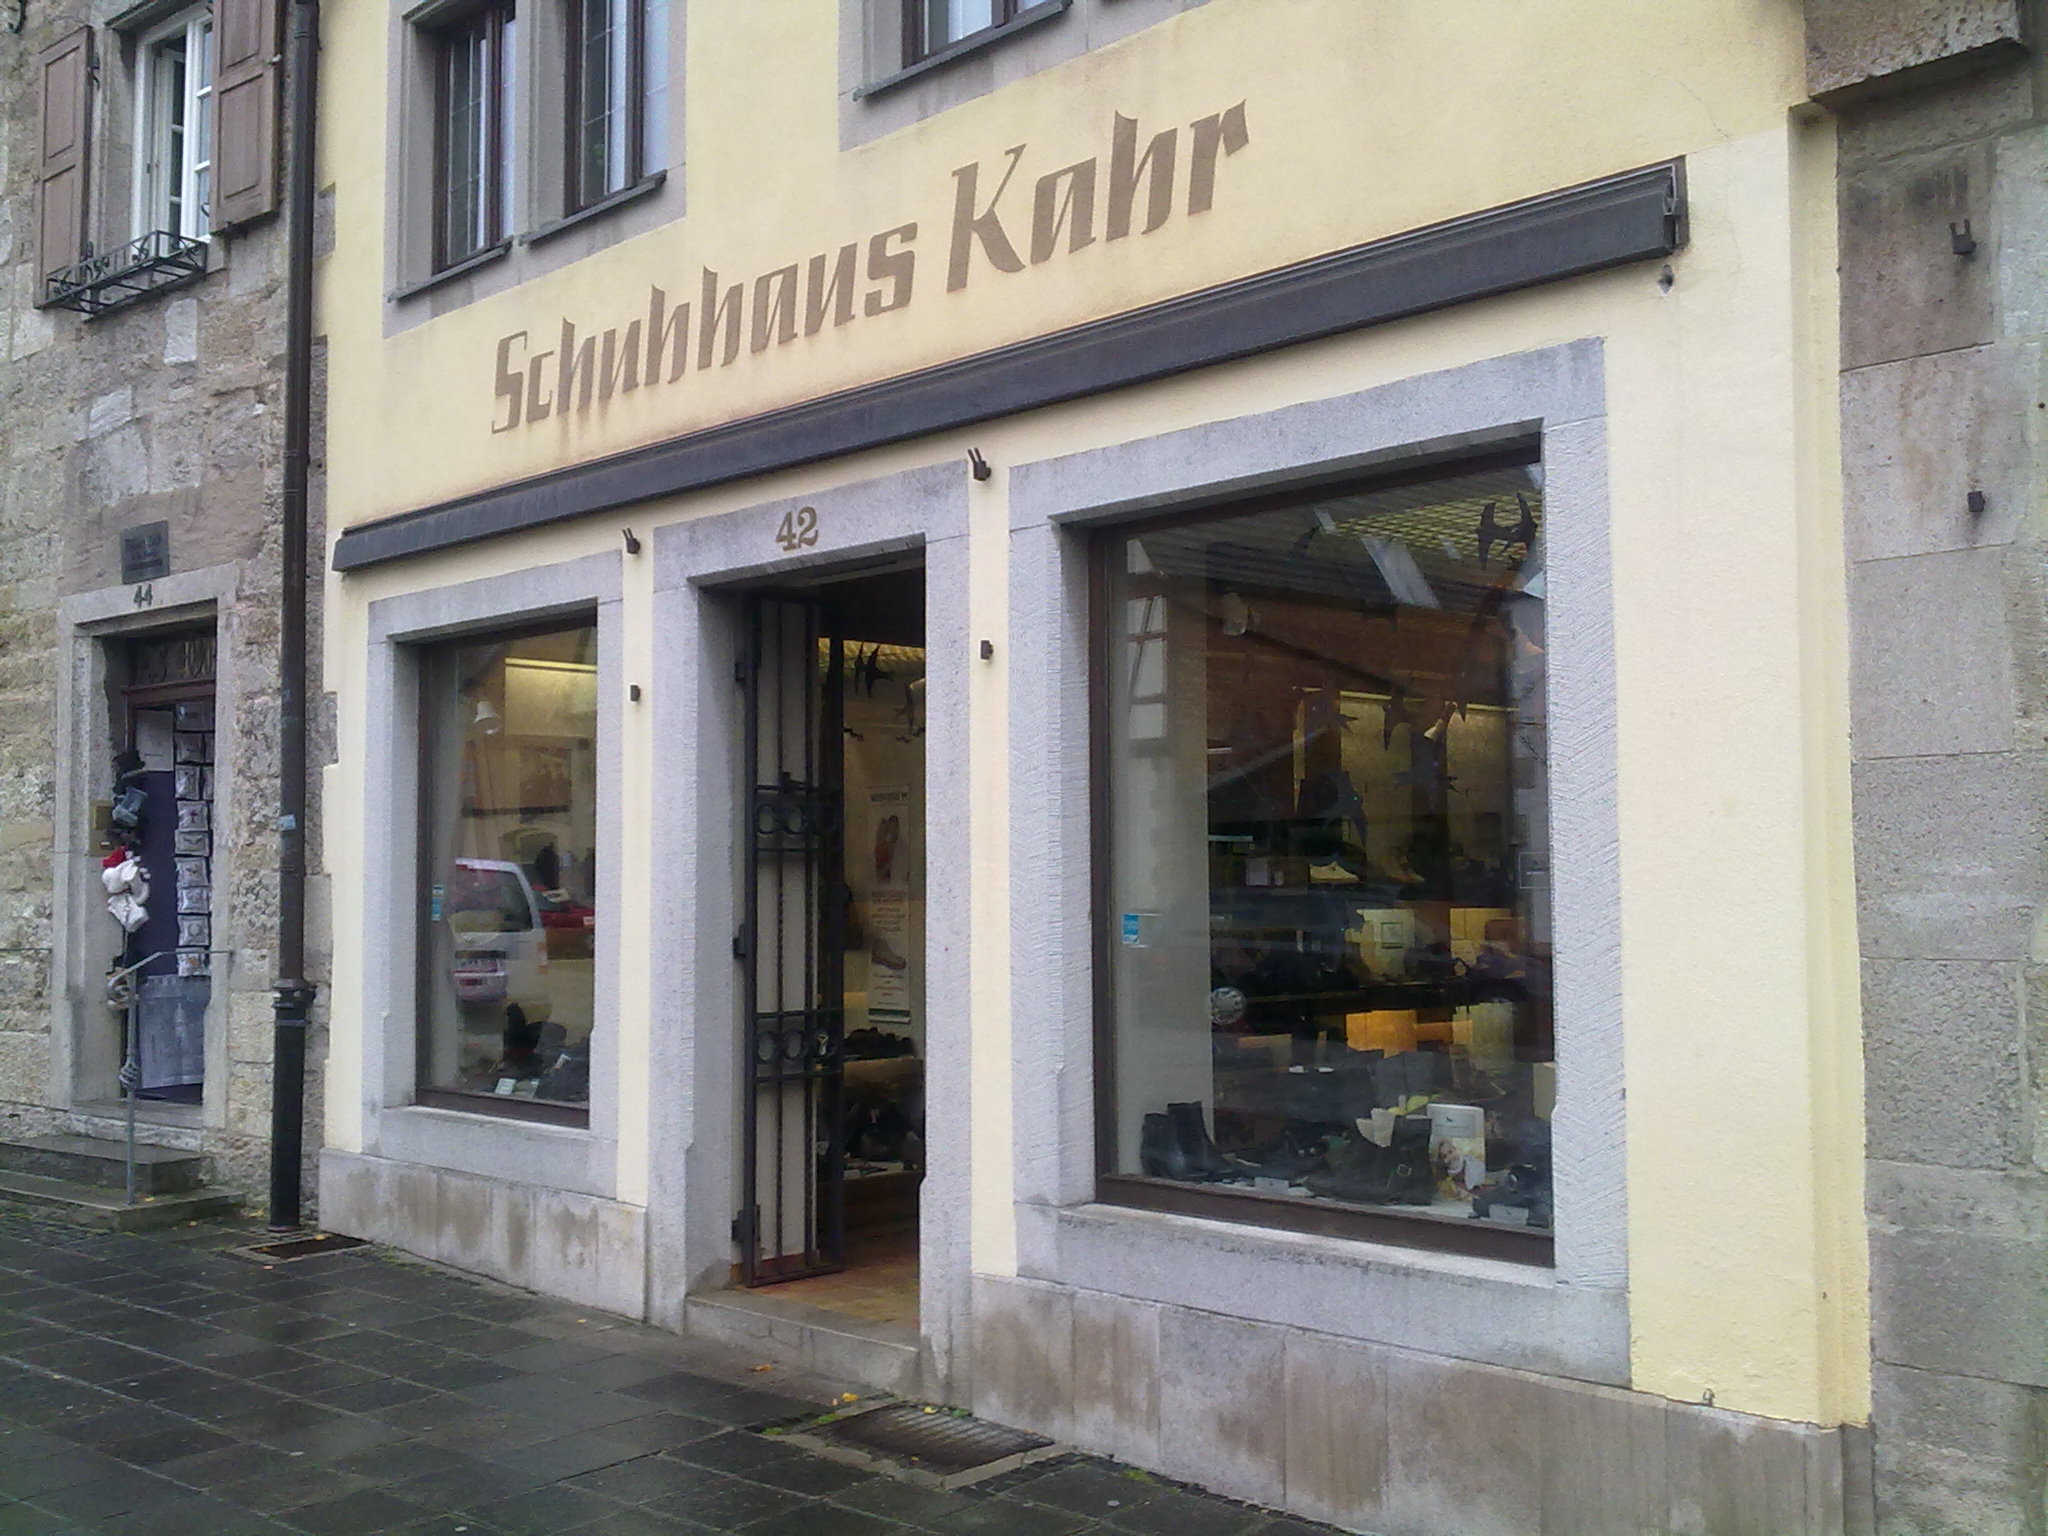 Schuh-Haus Kahr